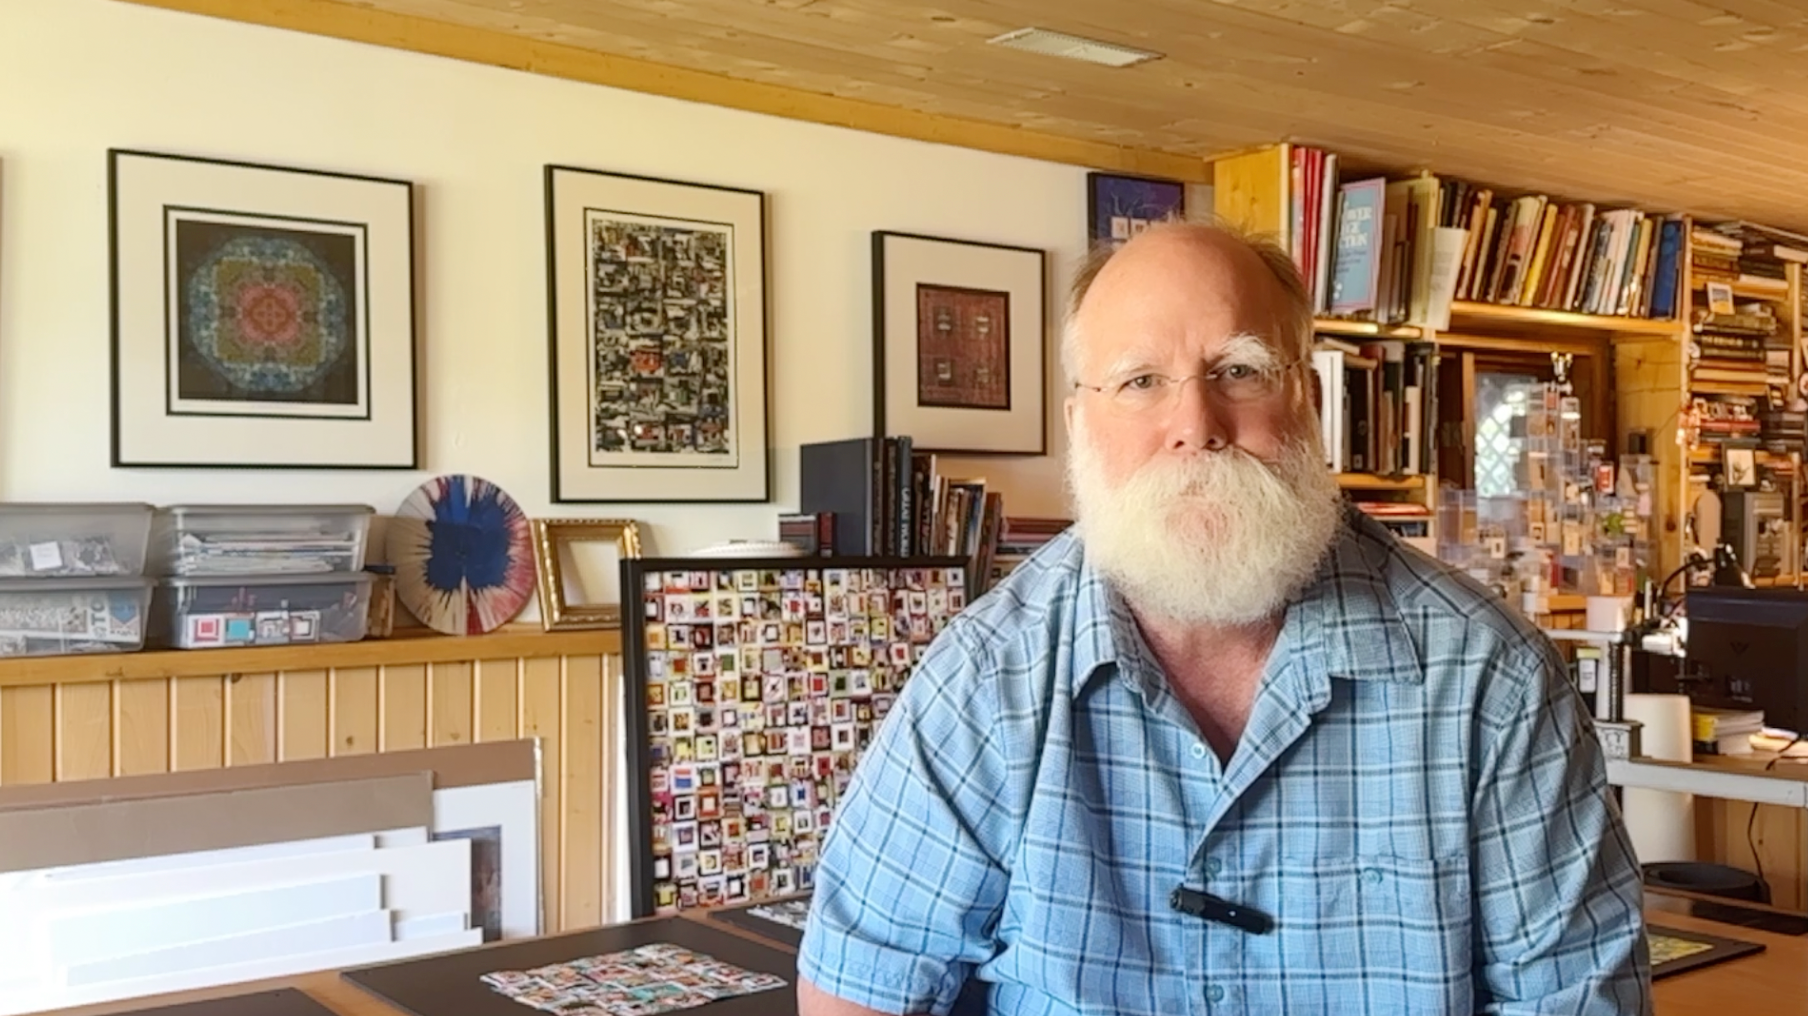 Load video: Dan Ott Art Artist Interview Welcome